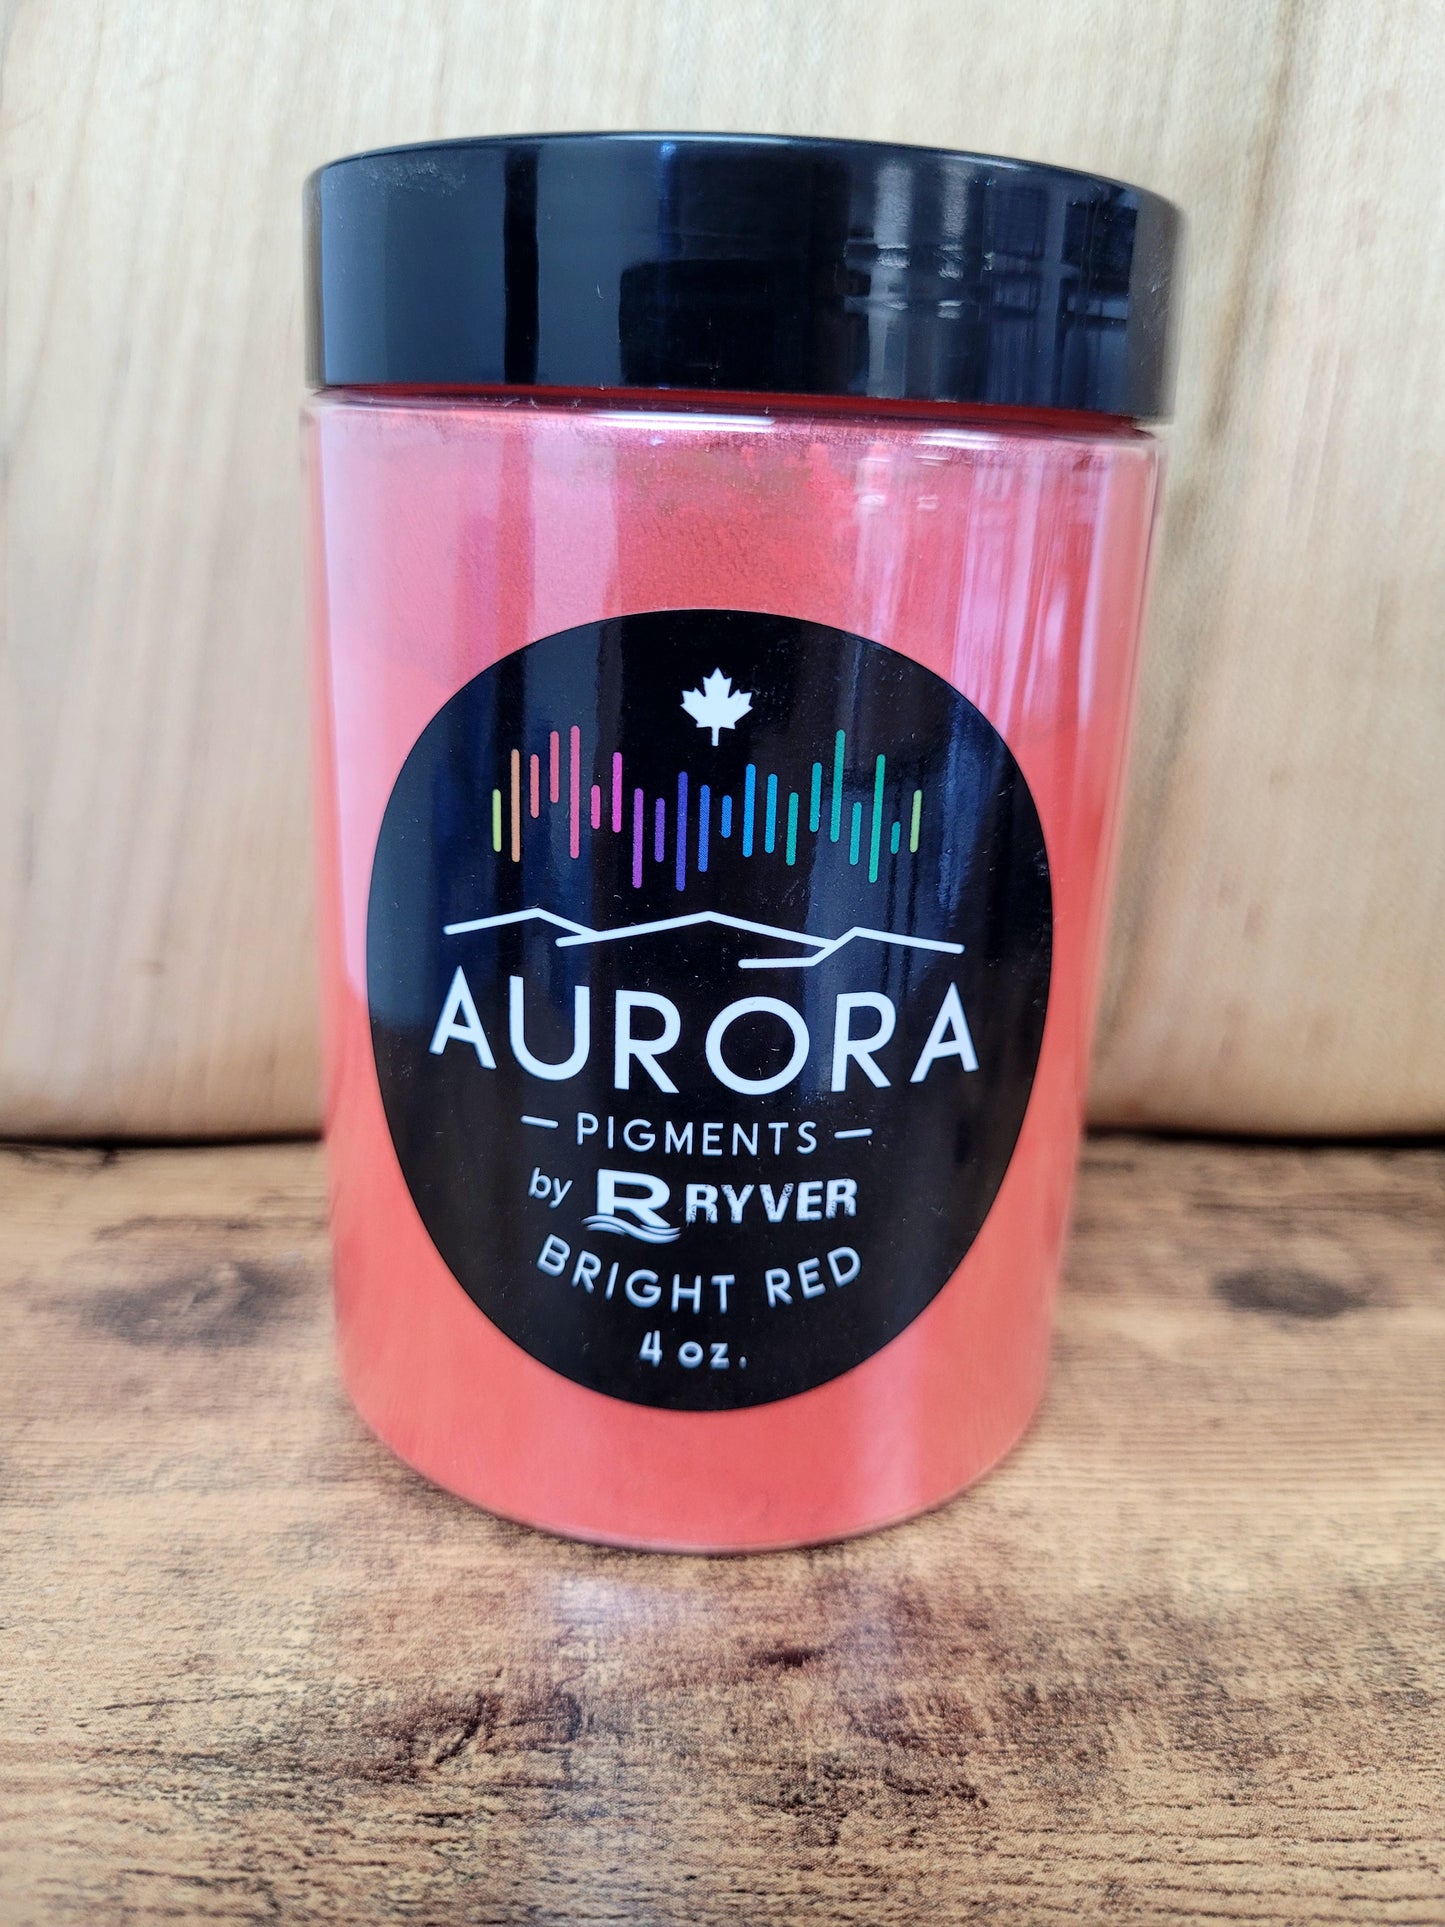 Pigments poudre métallique Aurora 60G